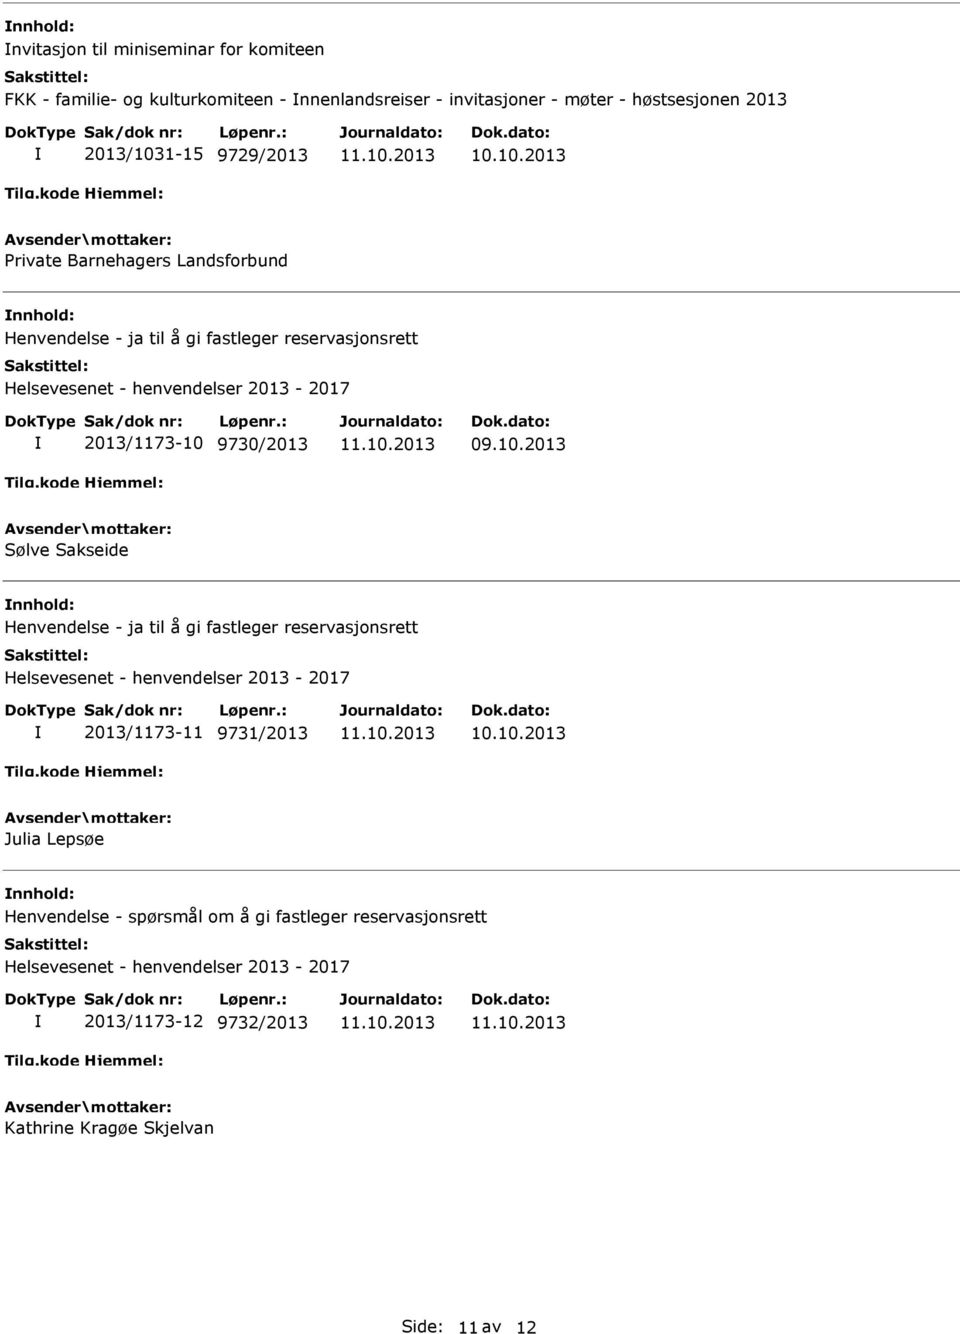 9730/2013 Sølve Sakseide Henvendelse - ja til å gi fastleger reservasjonsrett Helsevesenet - henvendelser 2013-2017 2013/1173-11 9731/2013 Julia